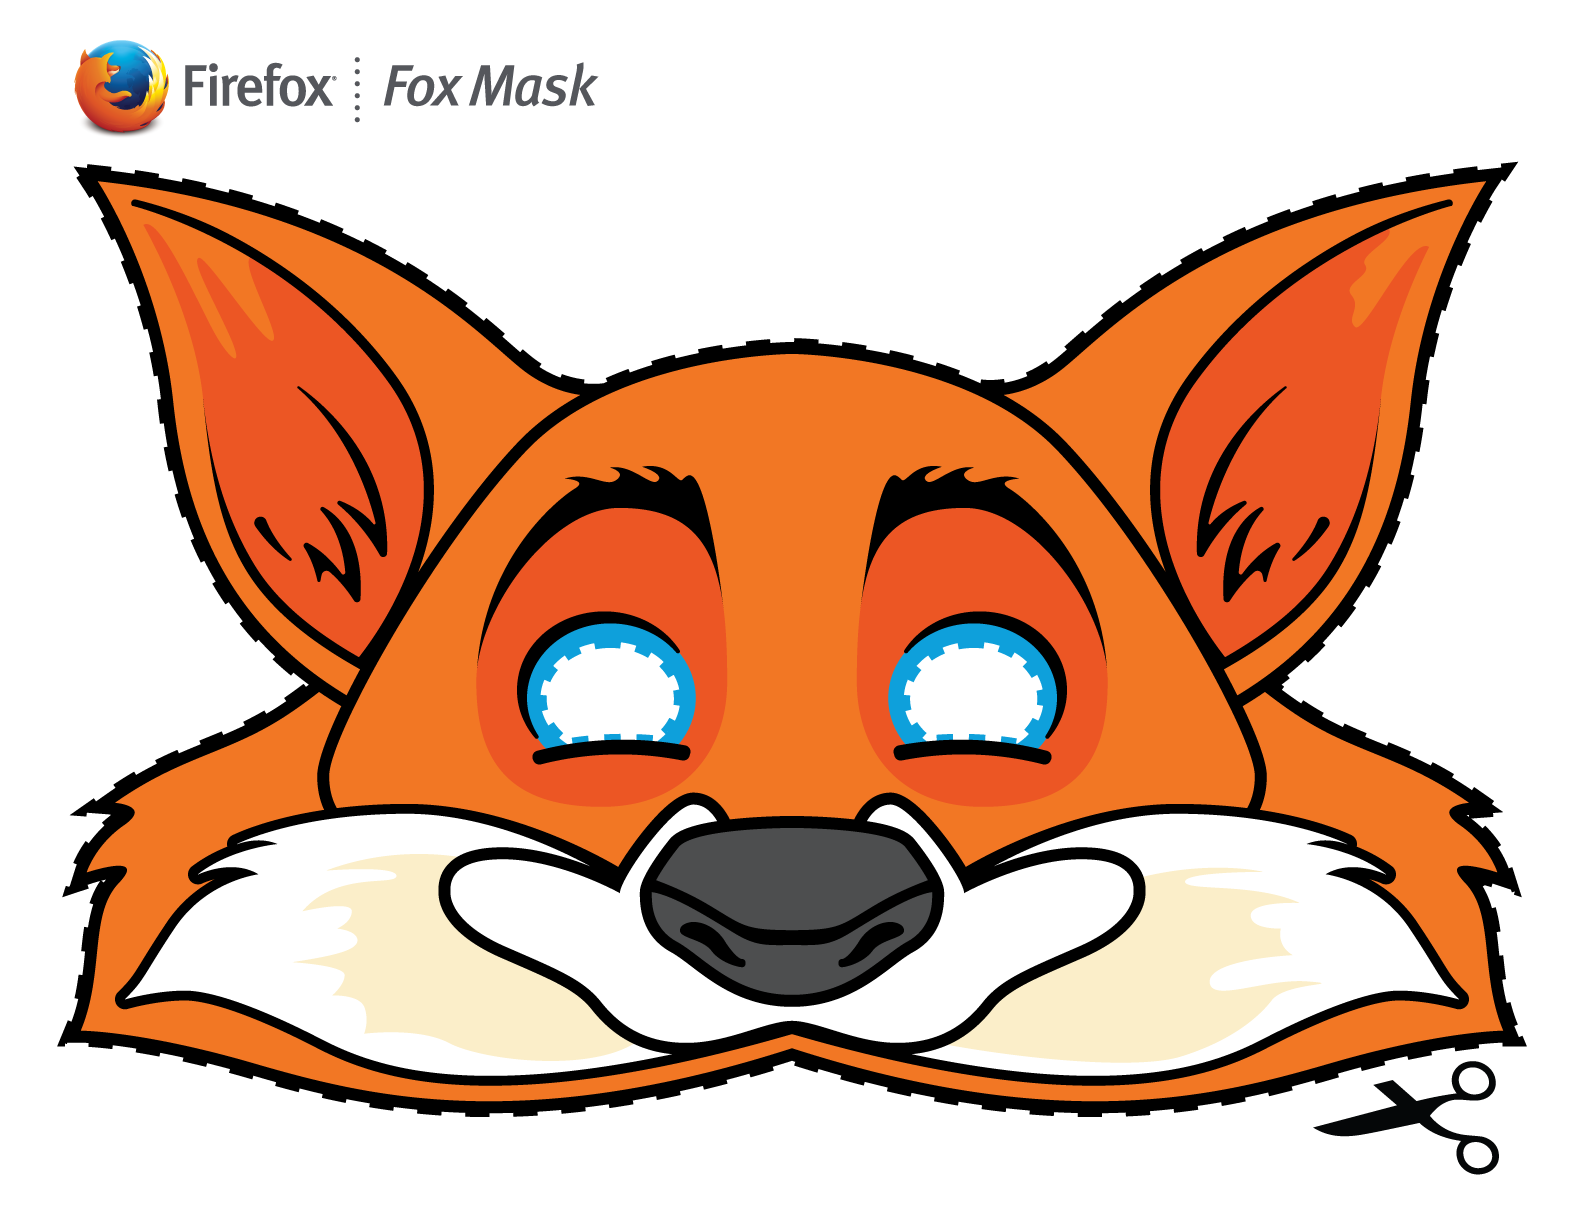 Mozilla Firefox Mask